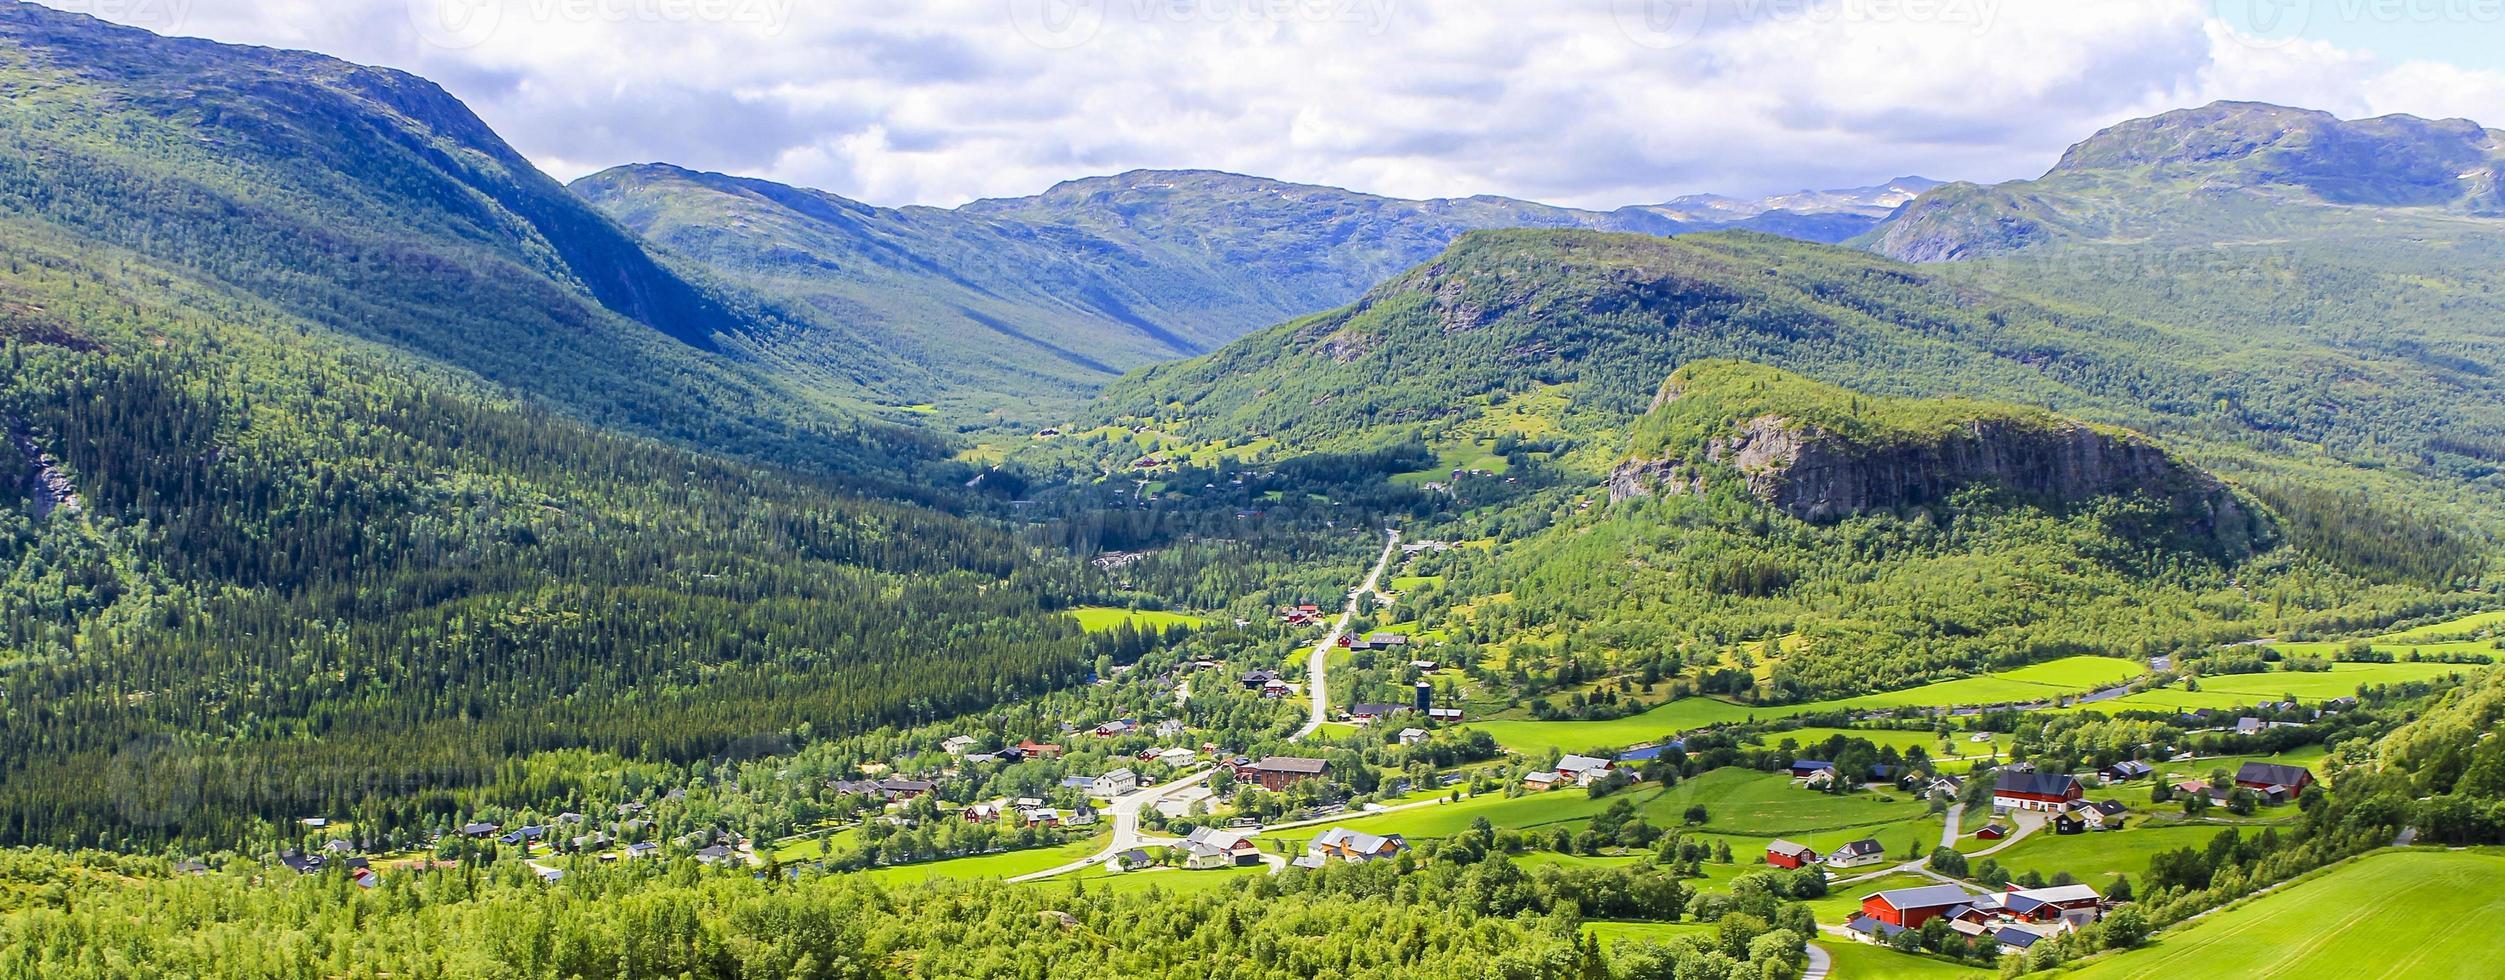 panorama noorwegen, hemsedalgebergte, rode boerderijen, groene weiden, viken. foto